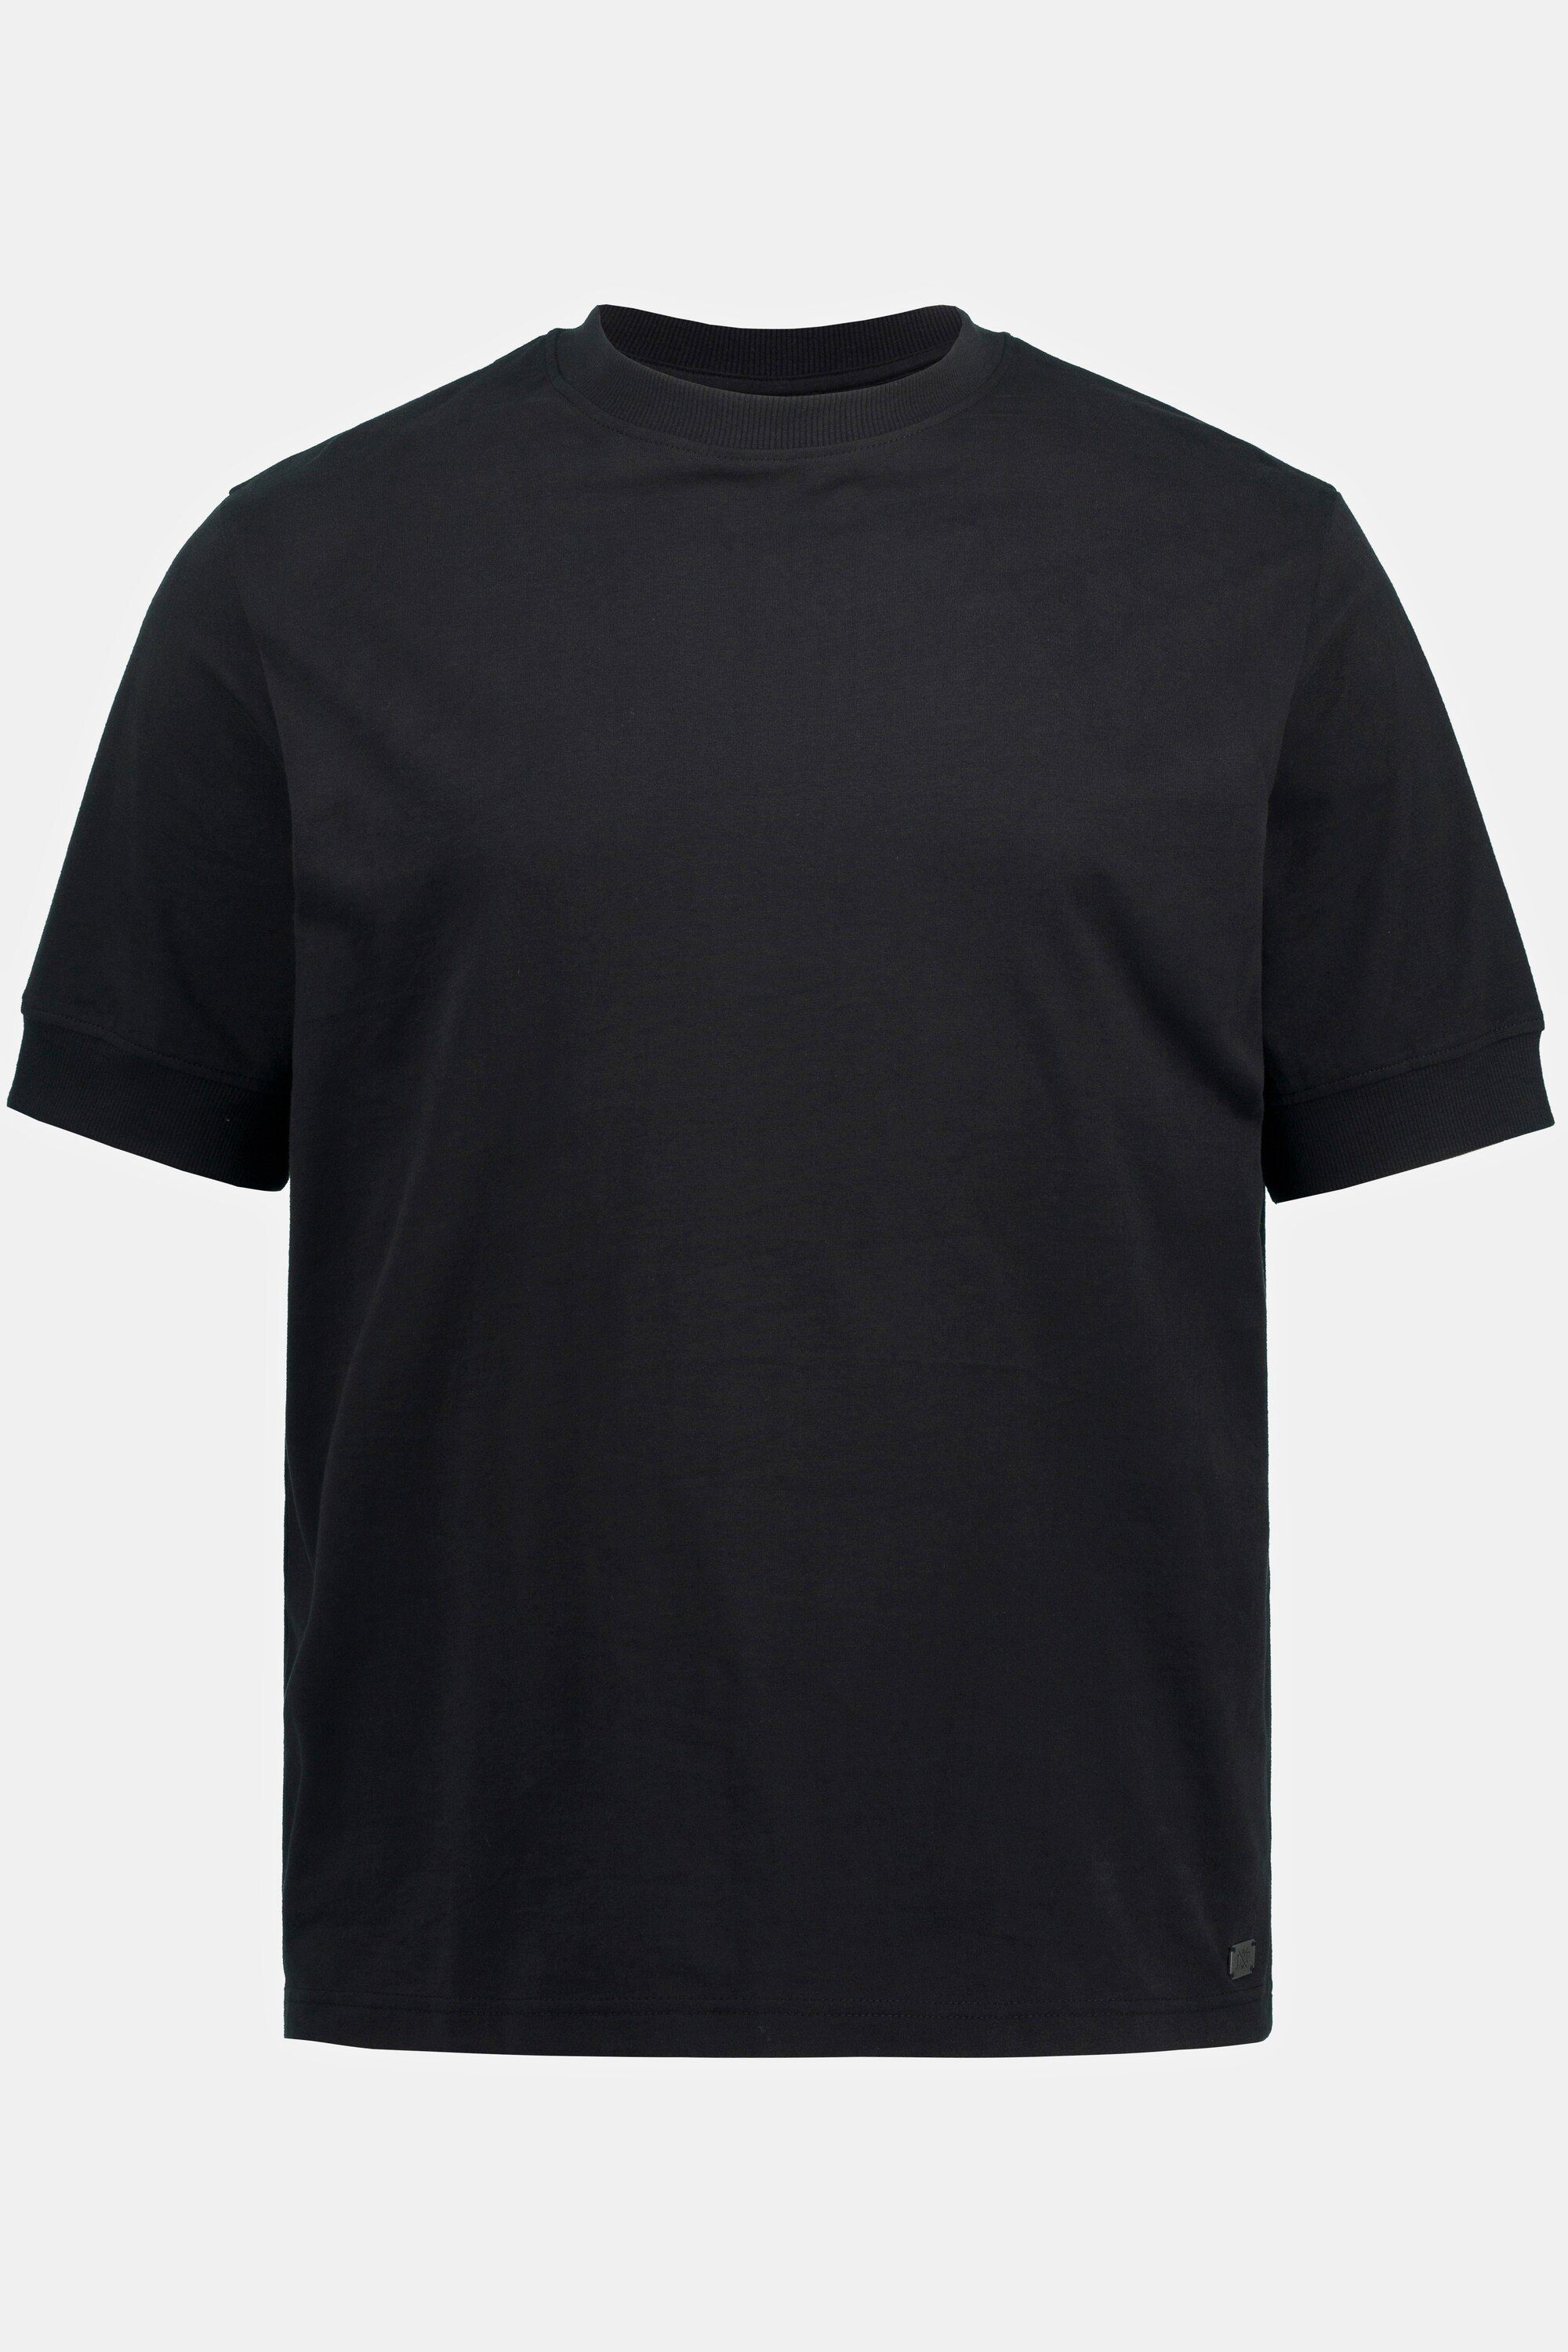 Halbarm JP1880 FLEXNAMIC® Rundhals T-Shirt T-Shirt